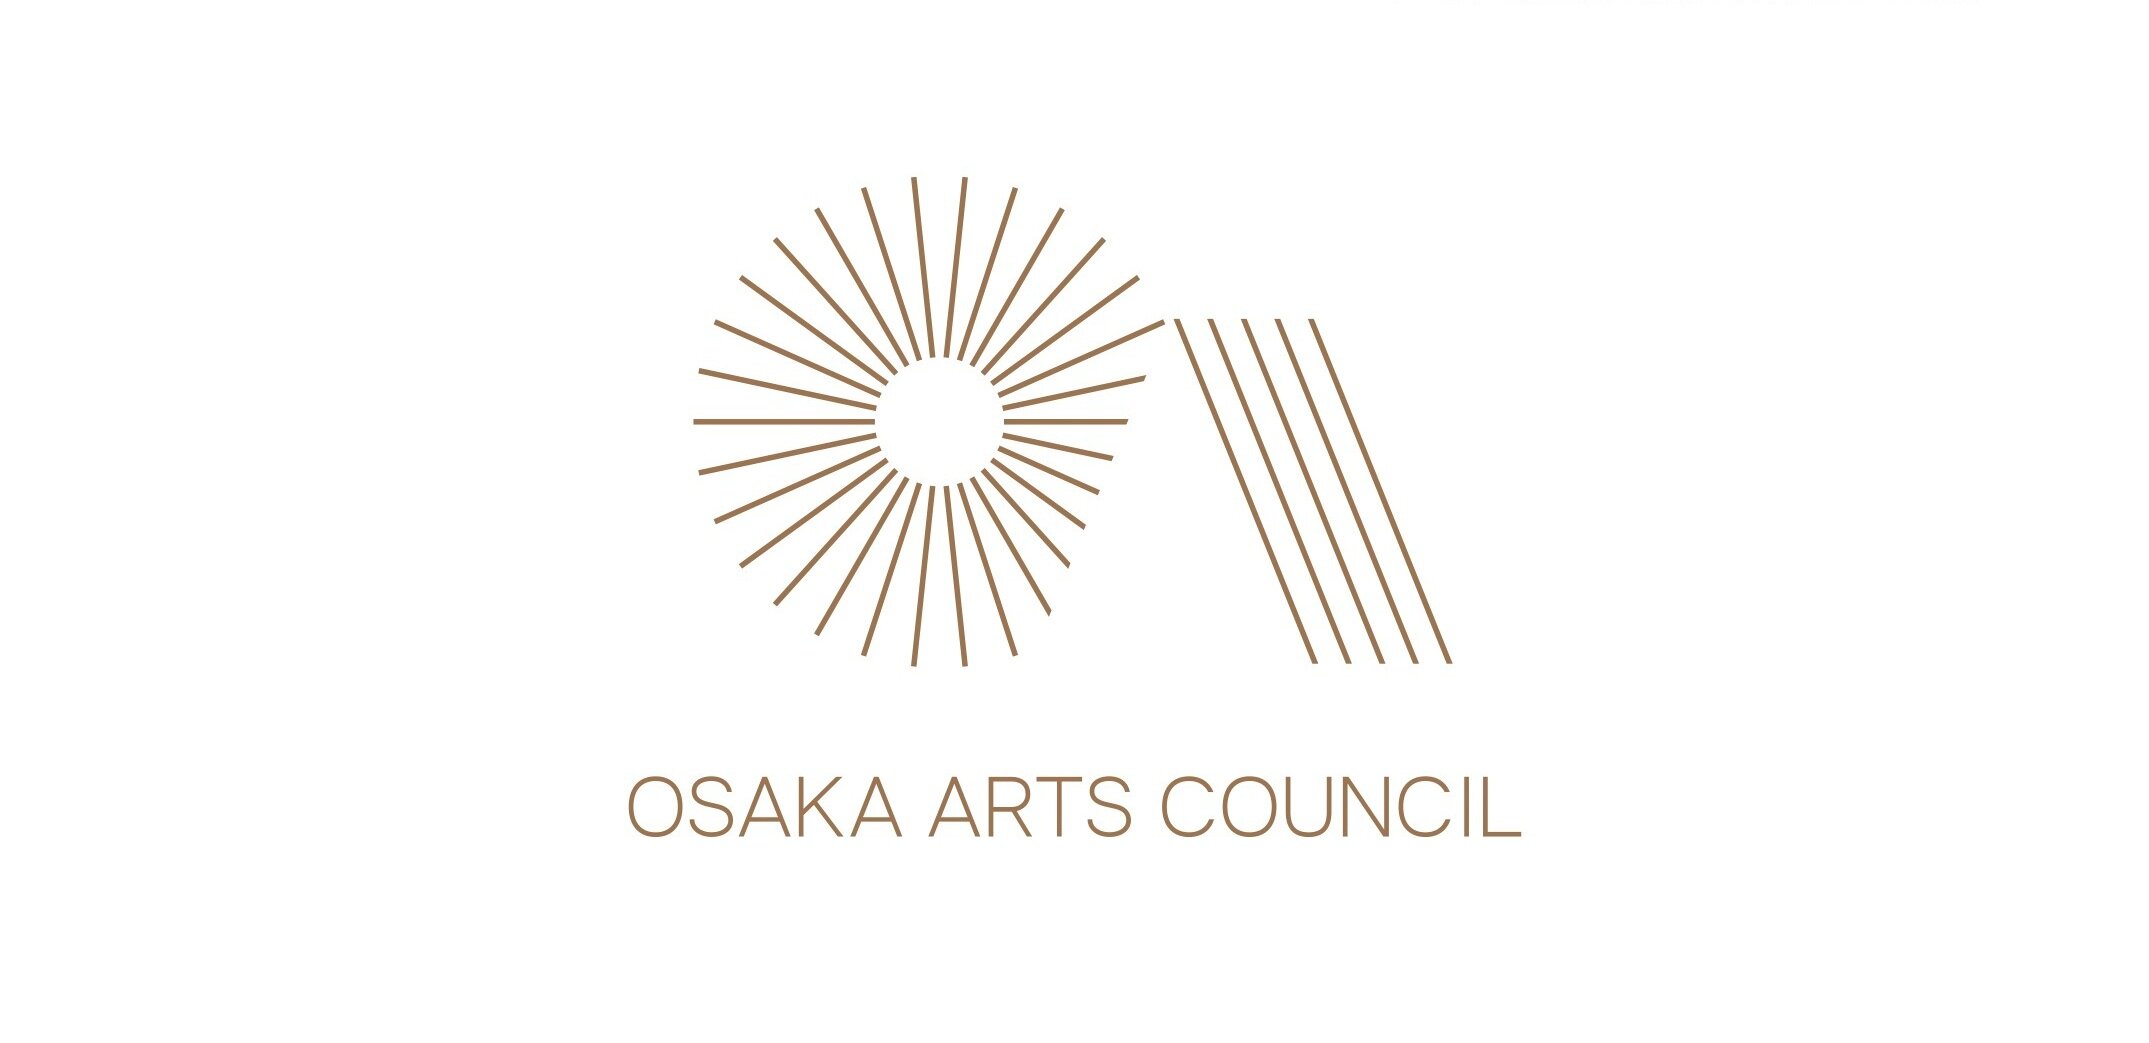 大阪の芸術や文化にまつわる情報発信をしてます。 文化芸術に携わる人、それを楽しみたい人、サポートする行政を繋ぐ架け橋になります。 大阪府市の文化事業への評価・審査、文化芸術活動の調査、連絡会などの企画を行い、そこから得られた情報や声を元に、行政や自治体と文化行政について考えます。 大阪府市の審議会の常設部会です！